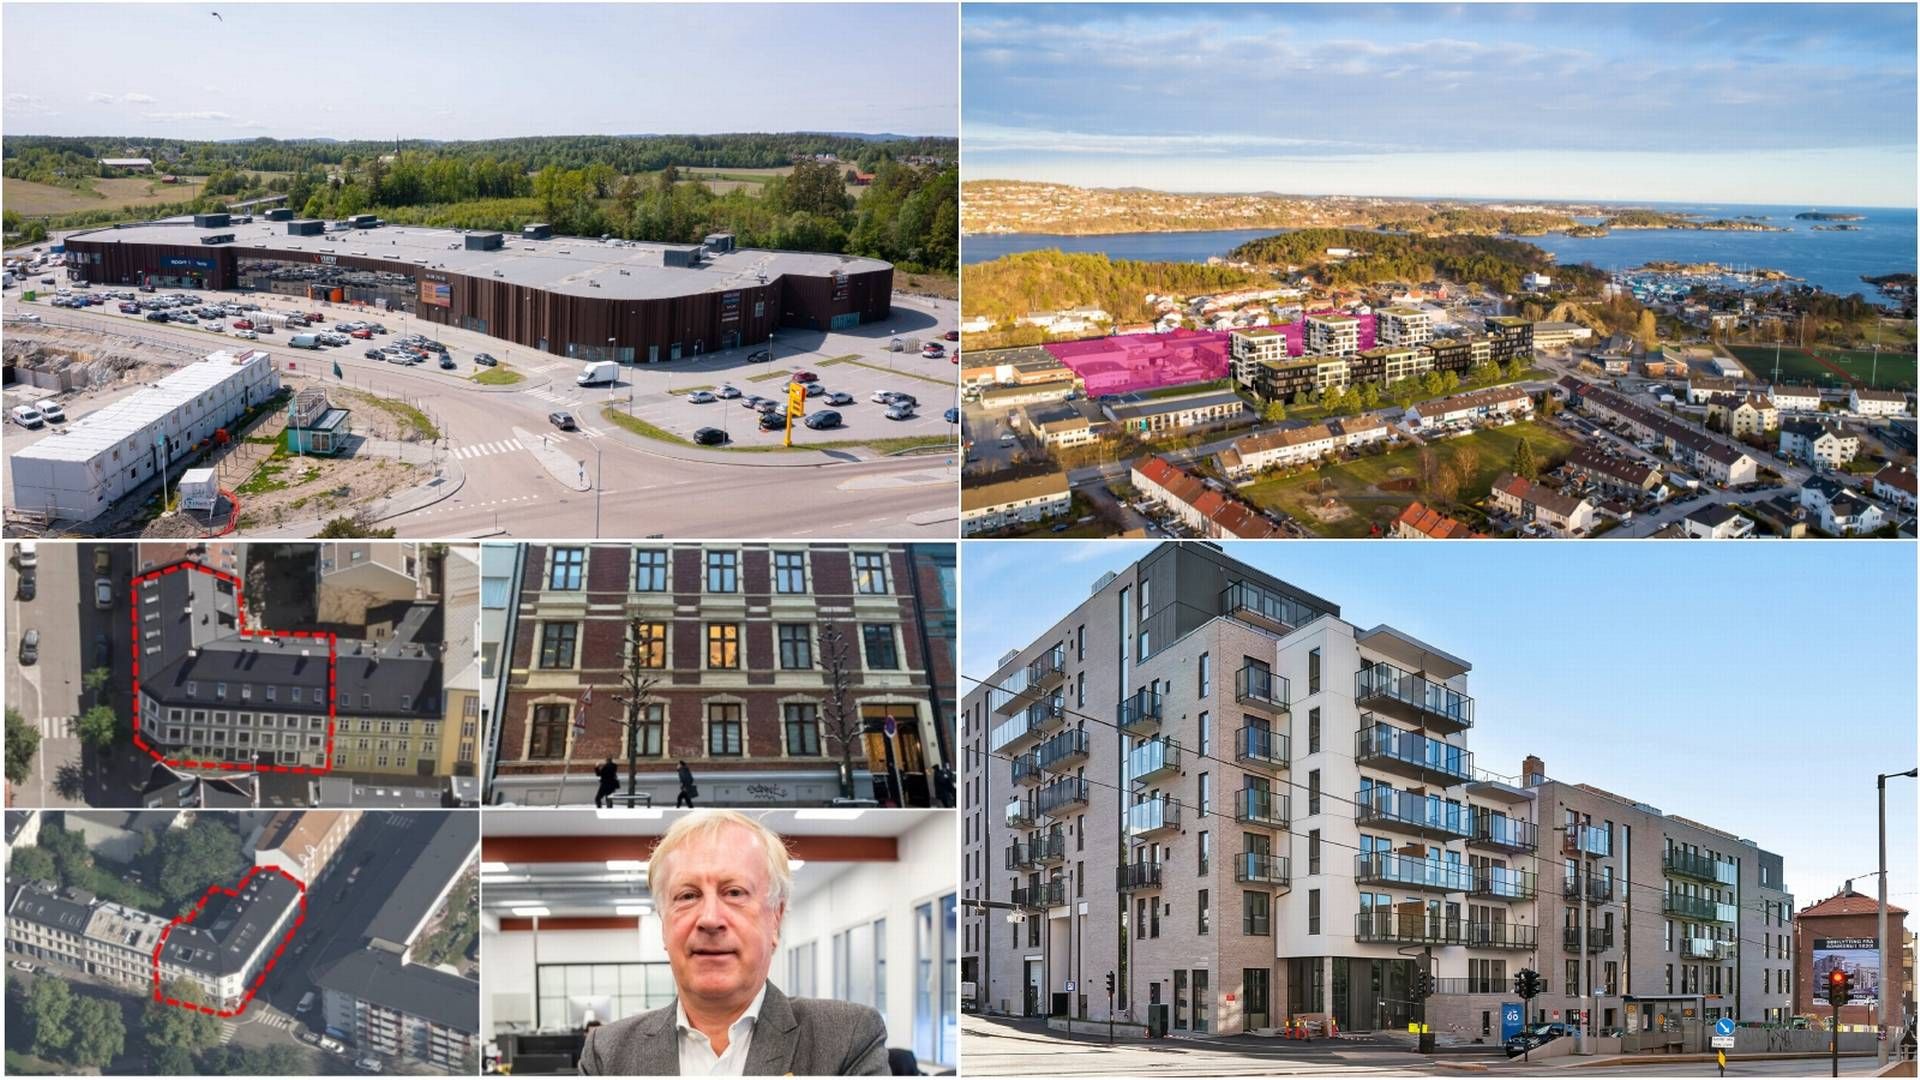 SOLGT: Vestby storsenter, et utviklingsområde i Kristiansand, tre bygårder i Oslo og Carl Berner Torg. | Foto: Selskapene, NTB og Oslo kommune. Collage: EiendomsWatch